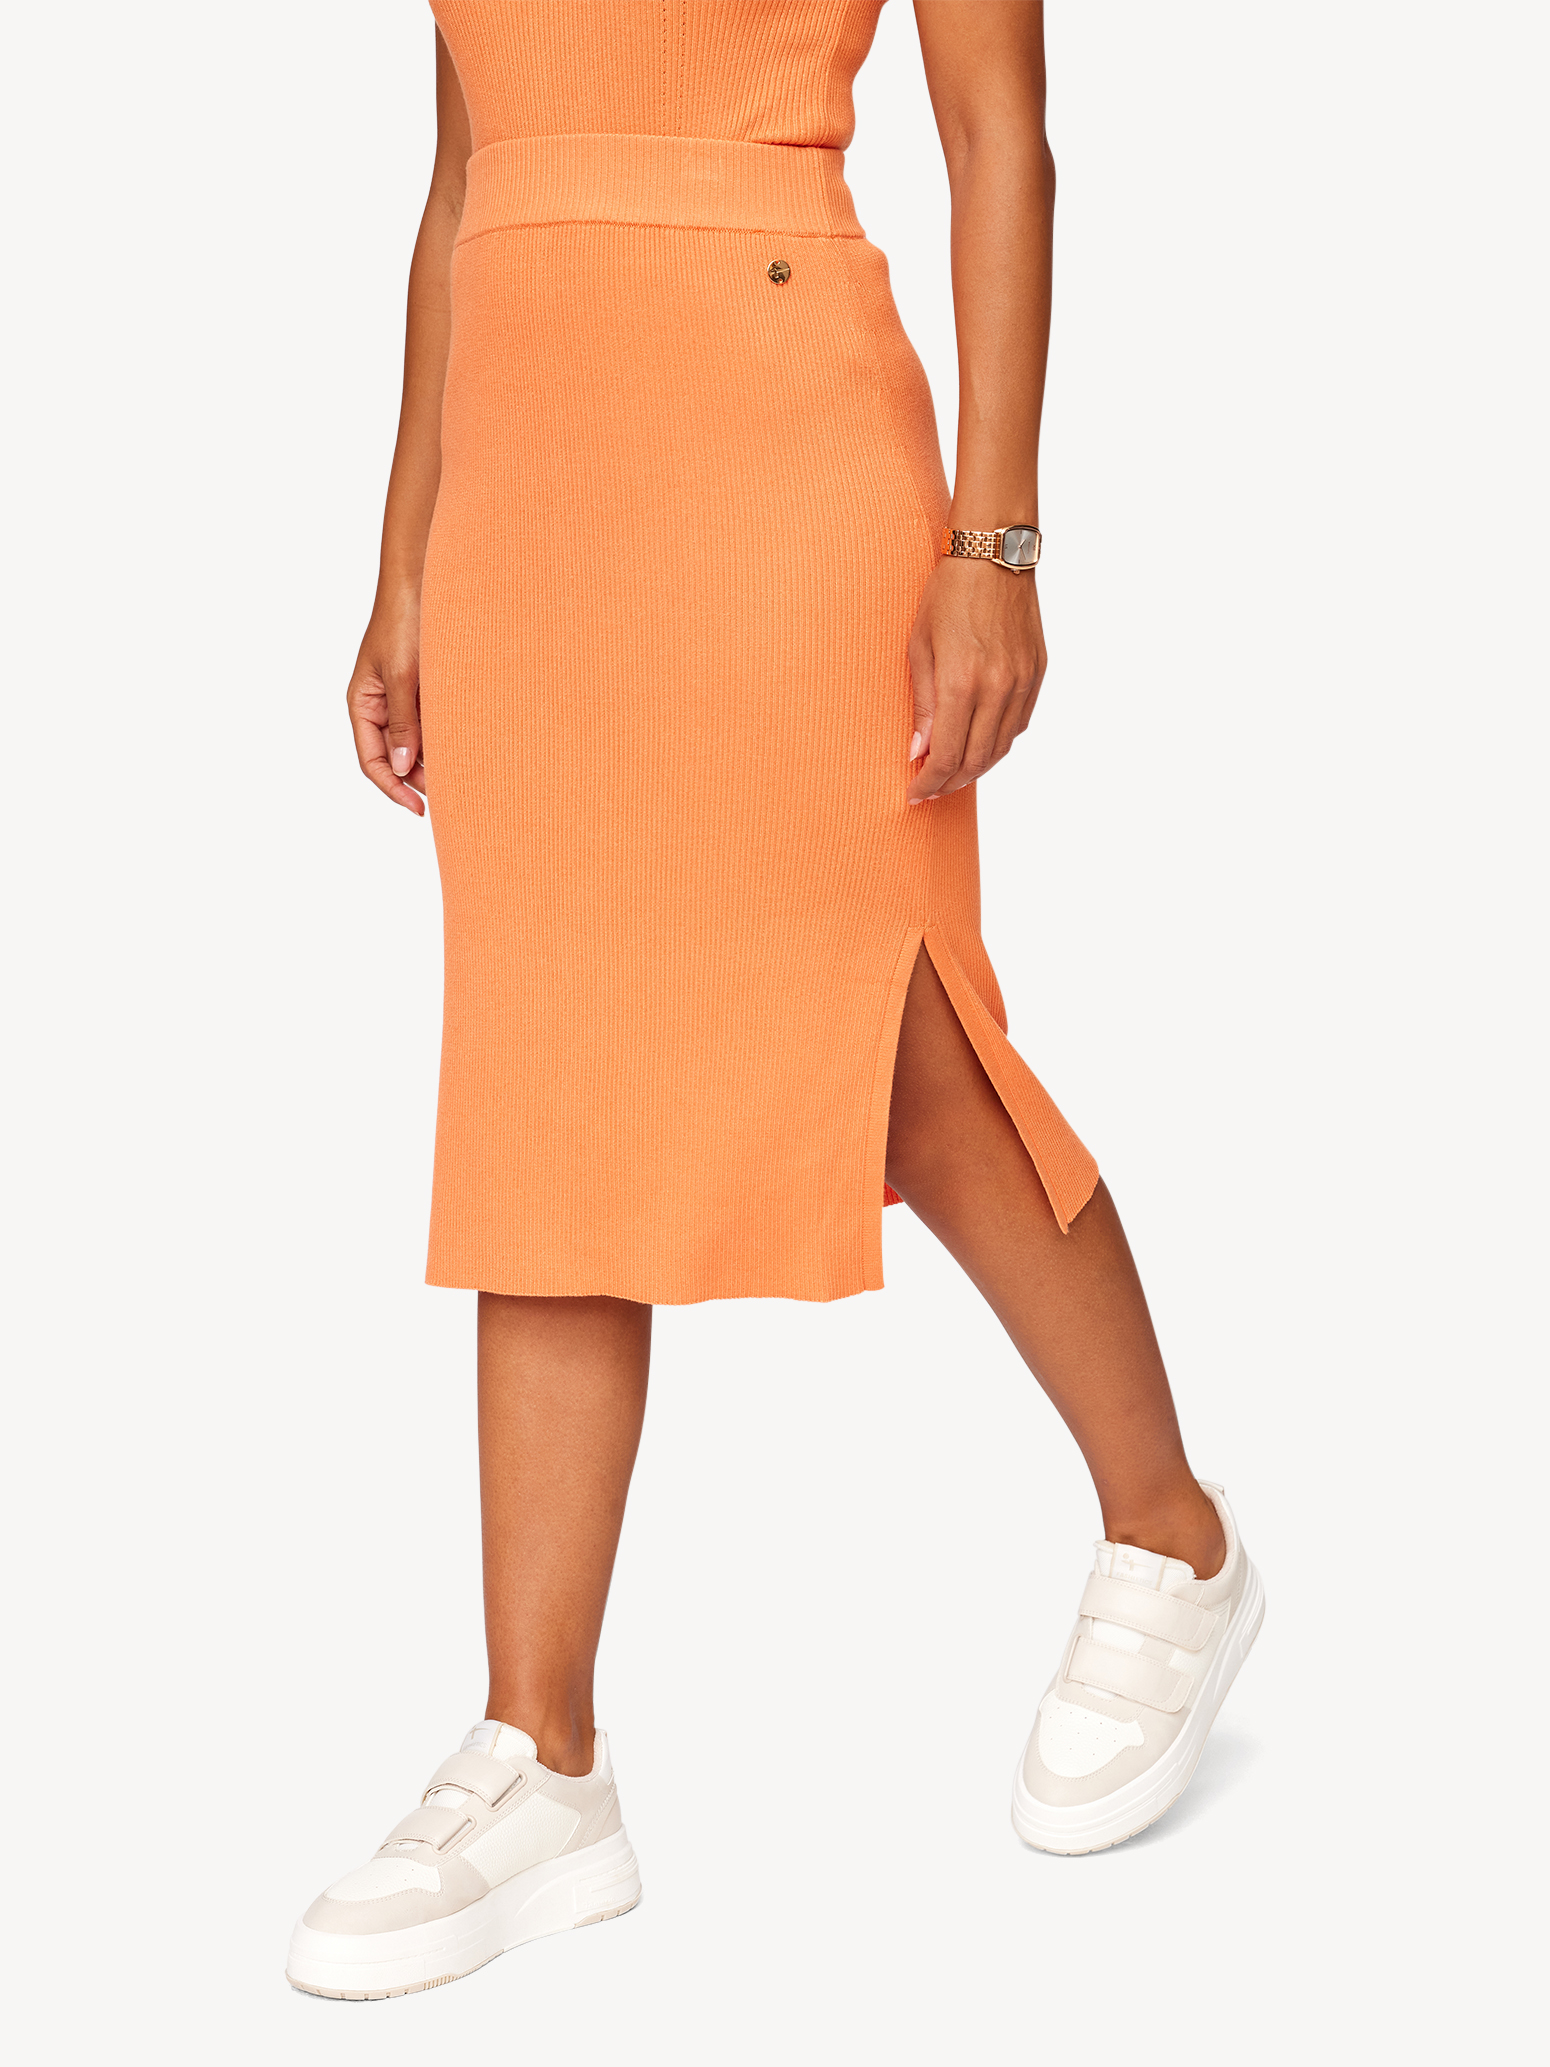 Rock - orange online Röcke kaufen! Tamaris TAW0036-30035